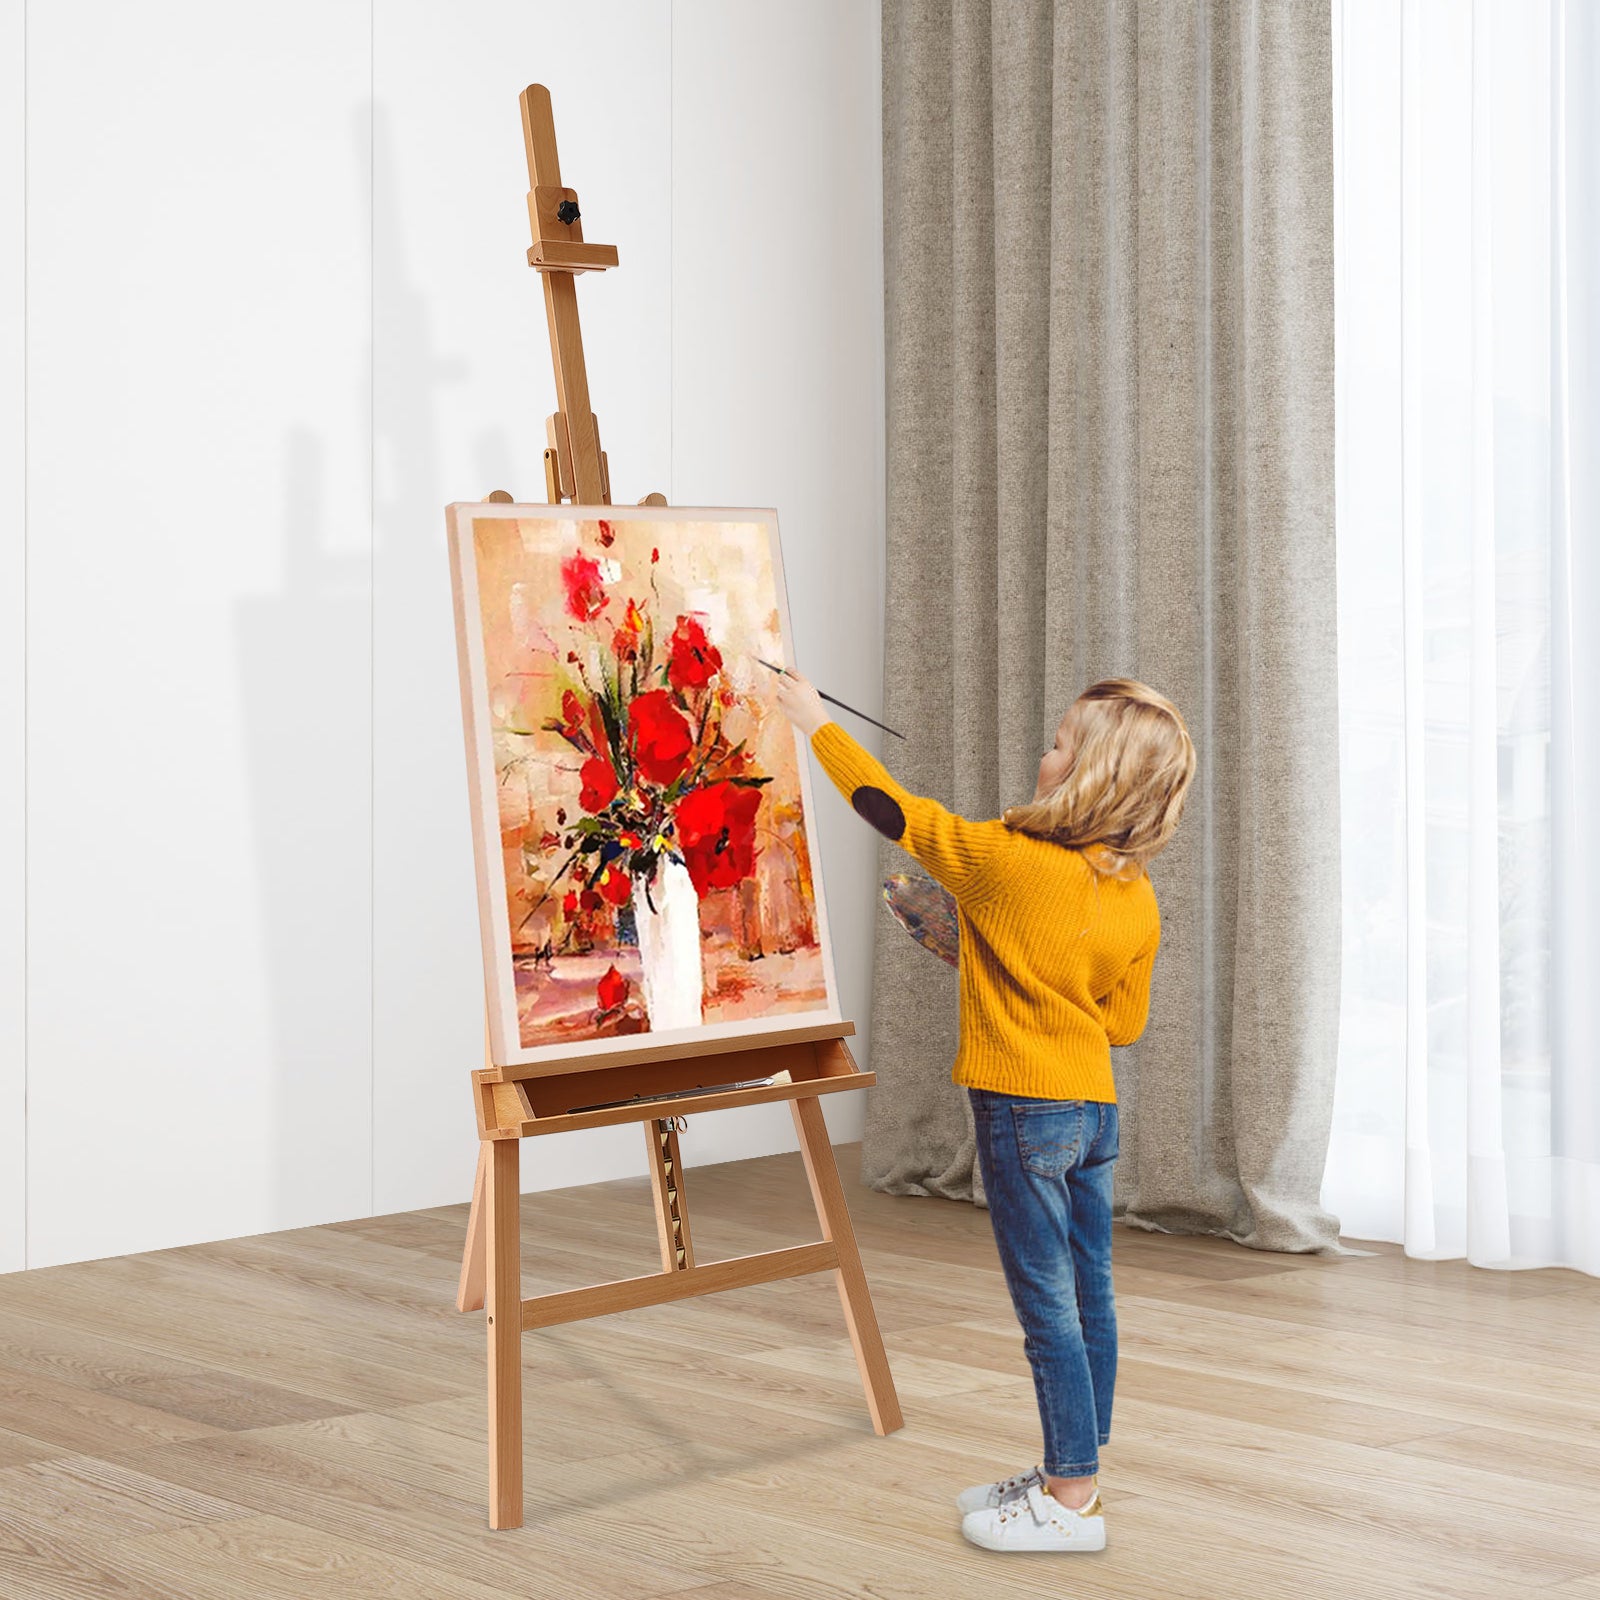 122 cm Cavalletto in legno con spazio di archiviazione, cavalletto in legno di faggio, pieghevole, per pittura artistica e bambini e adulti